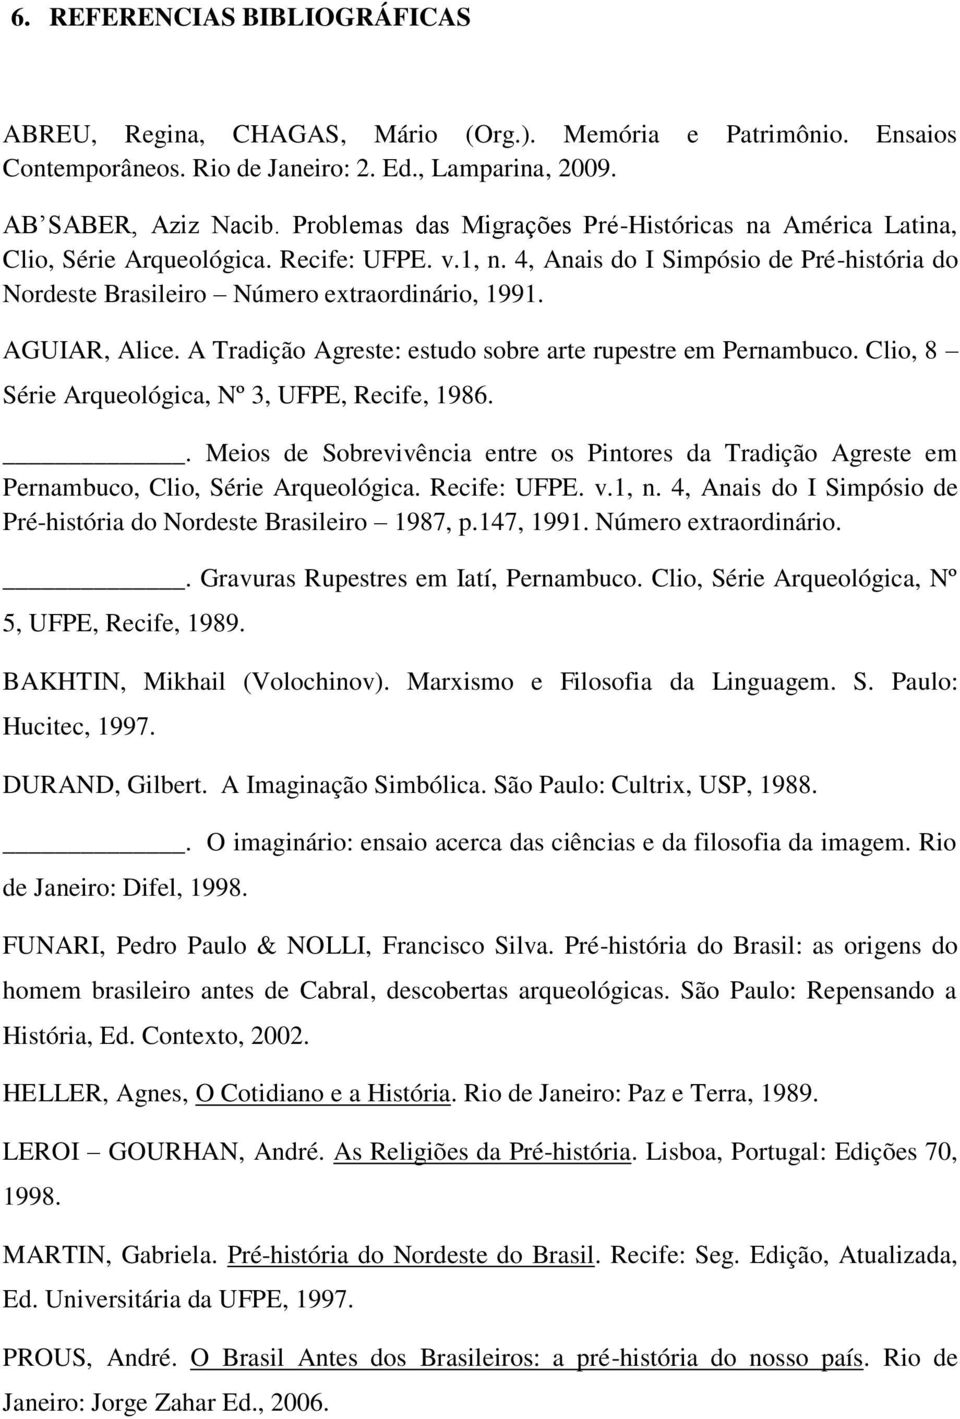 AGUIAR, Alice. A Tradição Agreste: estudo sobre arte rupestre em Pernambuco. Clio, 8 Série Arqueológica, Nº 3, UFPE, Recife, 1986.